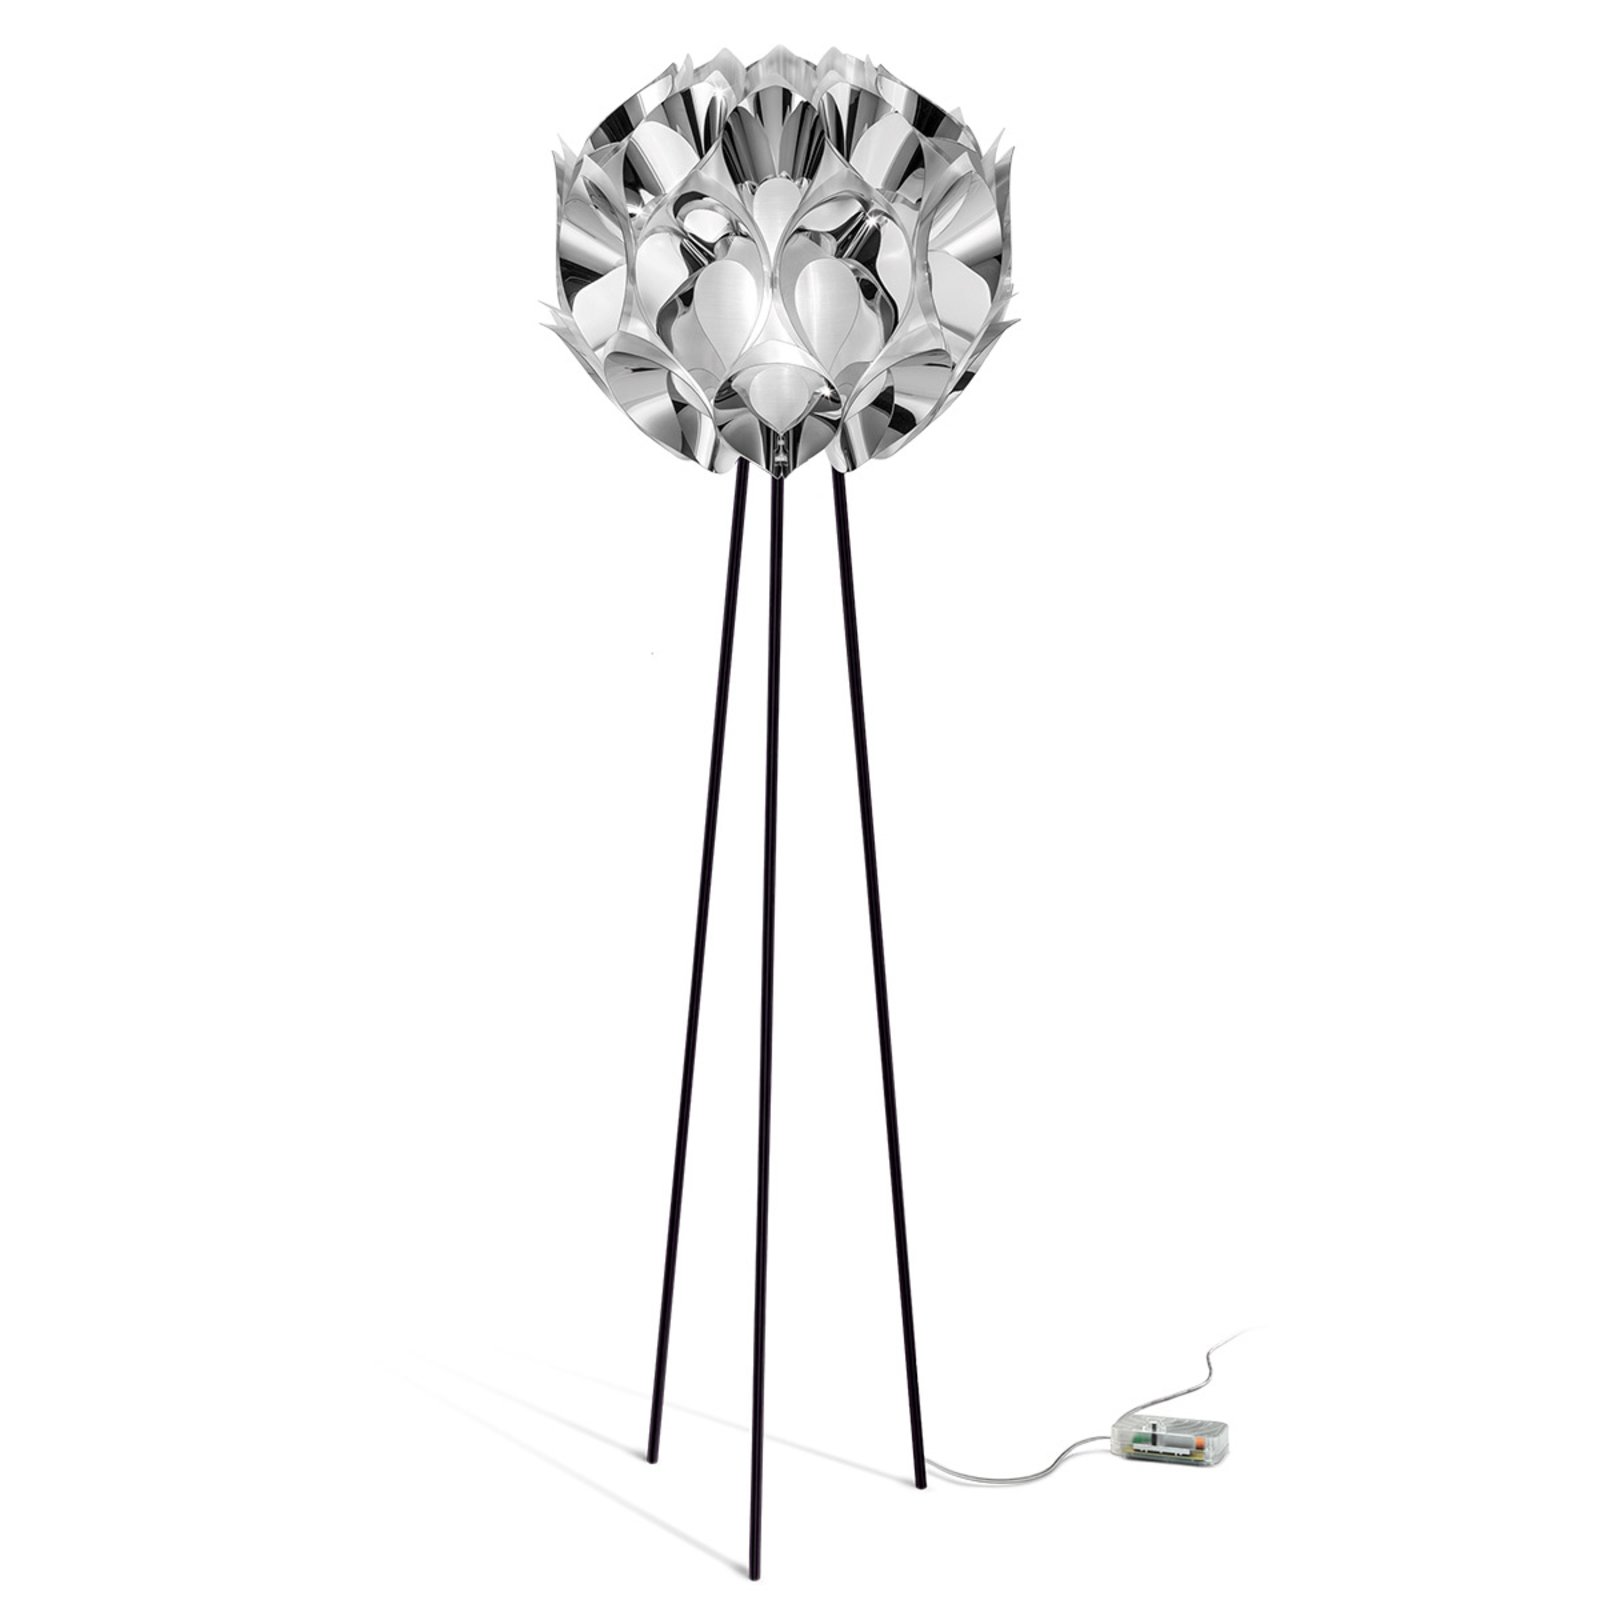 Slamp Flora - lámpara de pie de diseño, plateado